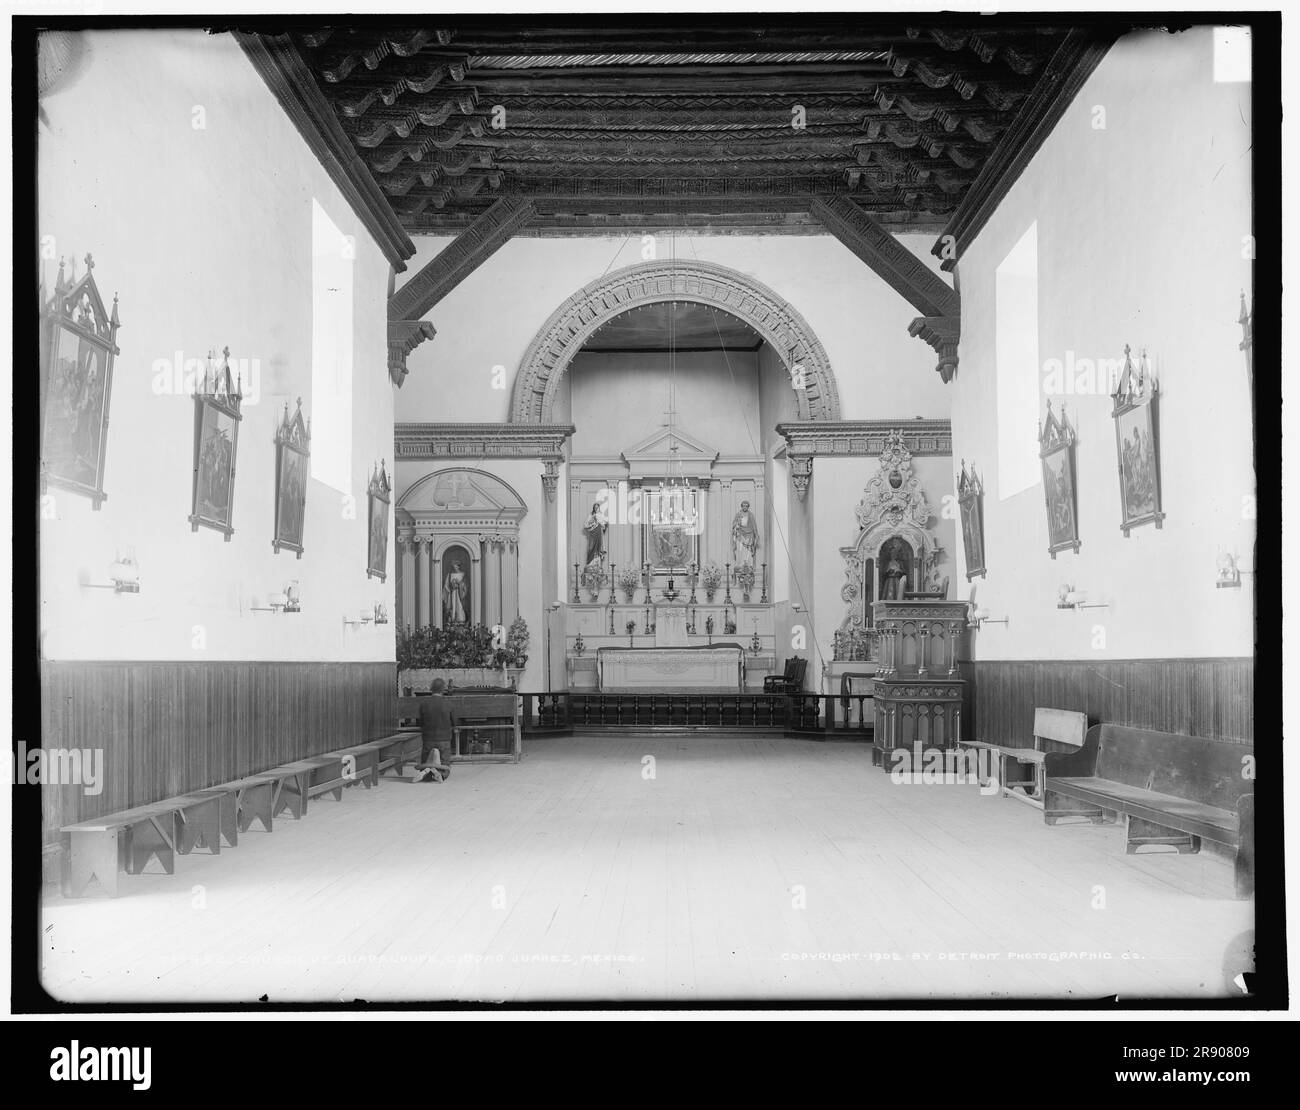 Église de Guadalupe, à savoir Guadalupe, Ciudad Juarez, Mexique, c1902. Église de mission franciscaine, construite au 17th siècle. Une nouvelle cathédrale a été construite à côté et consacrée en 1941. Note homme priant à gauche, son sombrero sur ses pieds. Banque D'Images